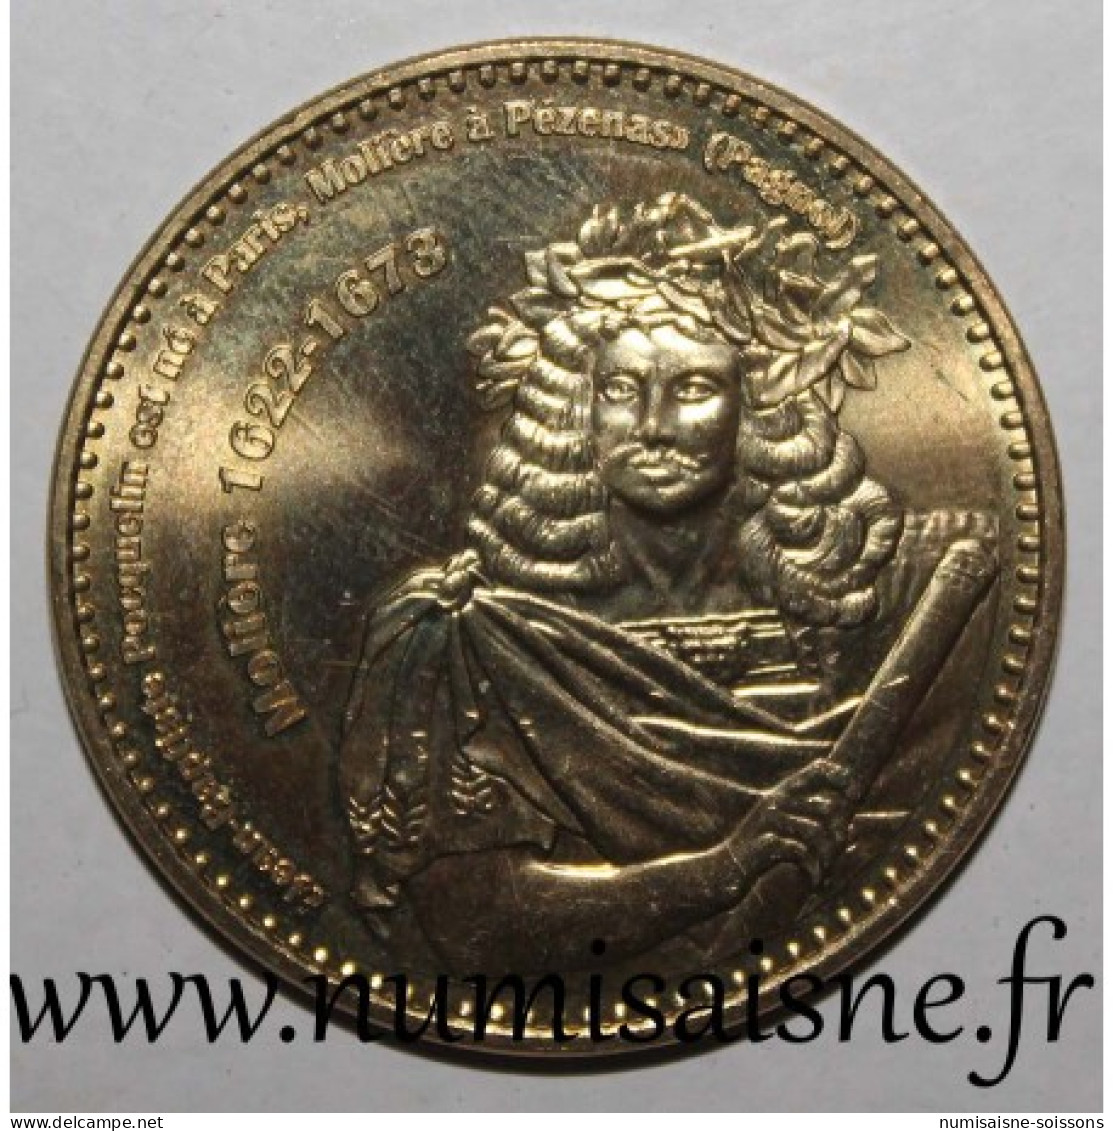 34 - PÉZENAS - Molière 1622 - 1673 - Monnaie De Paris - 2014 - 2014